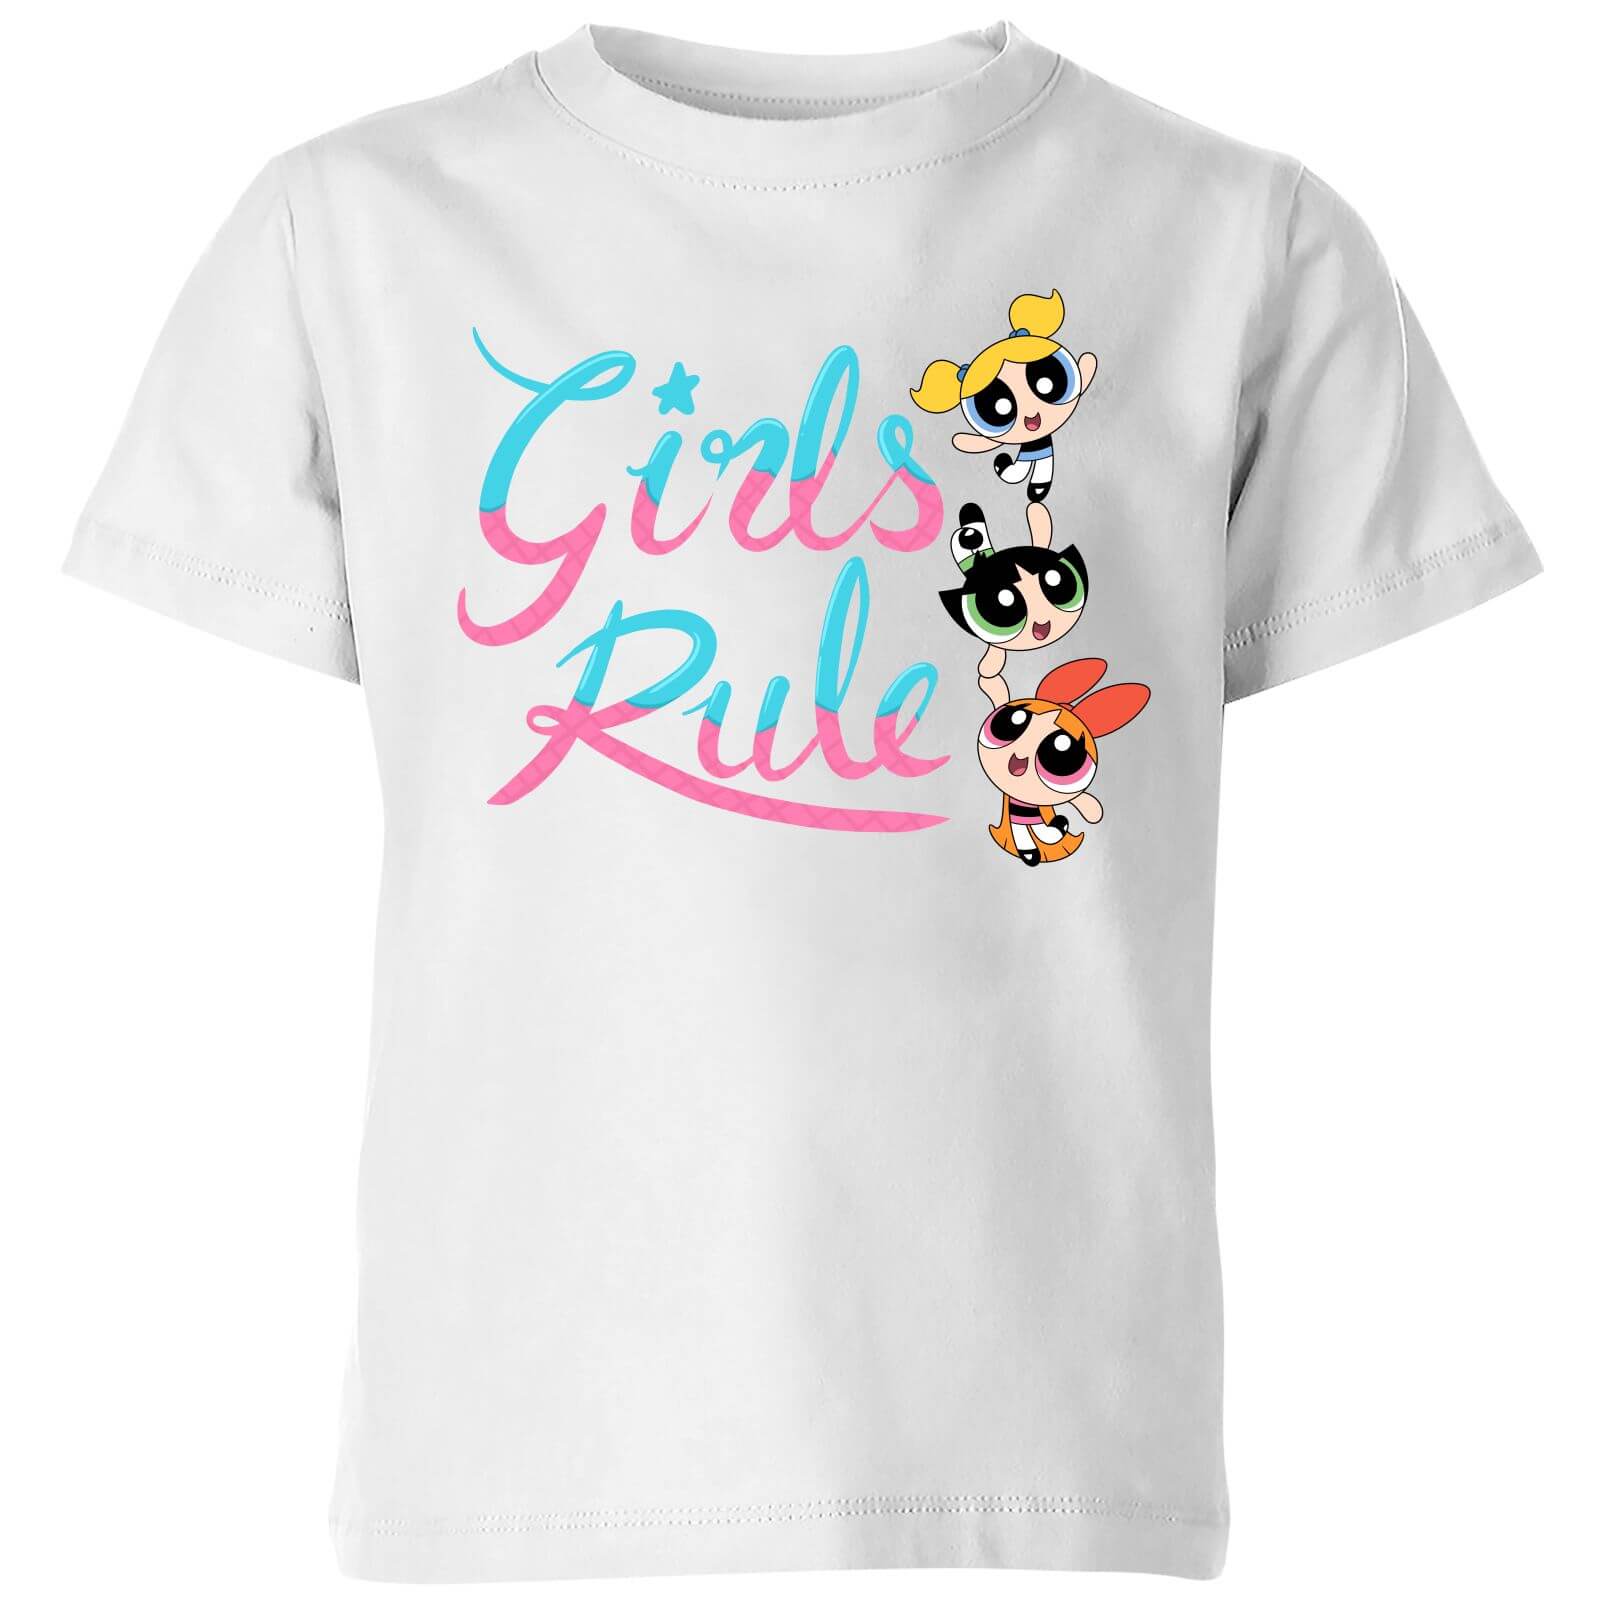 The Powerpuff Girls Girls Rule Kids' T-Shirt - White - 3-4 Years - White